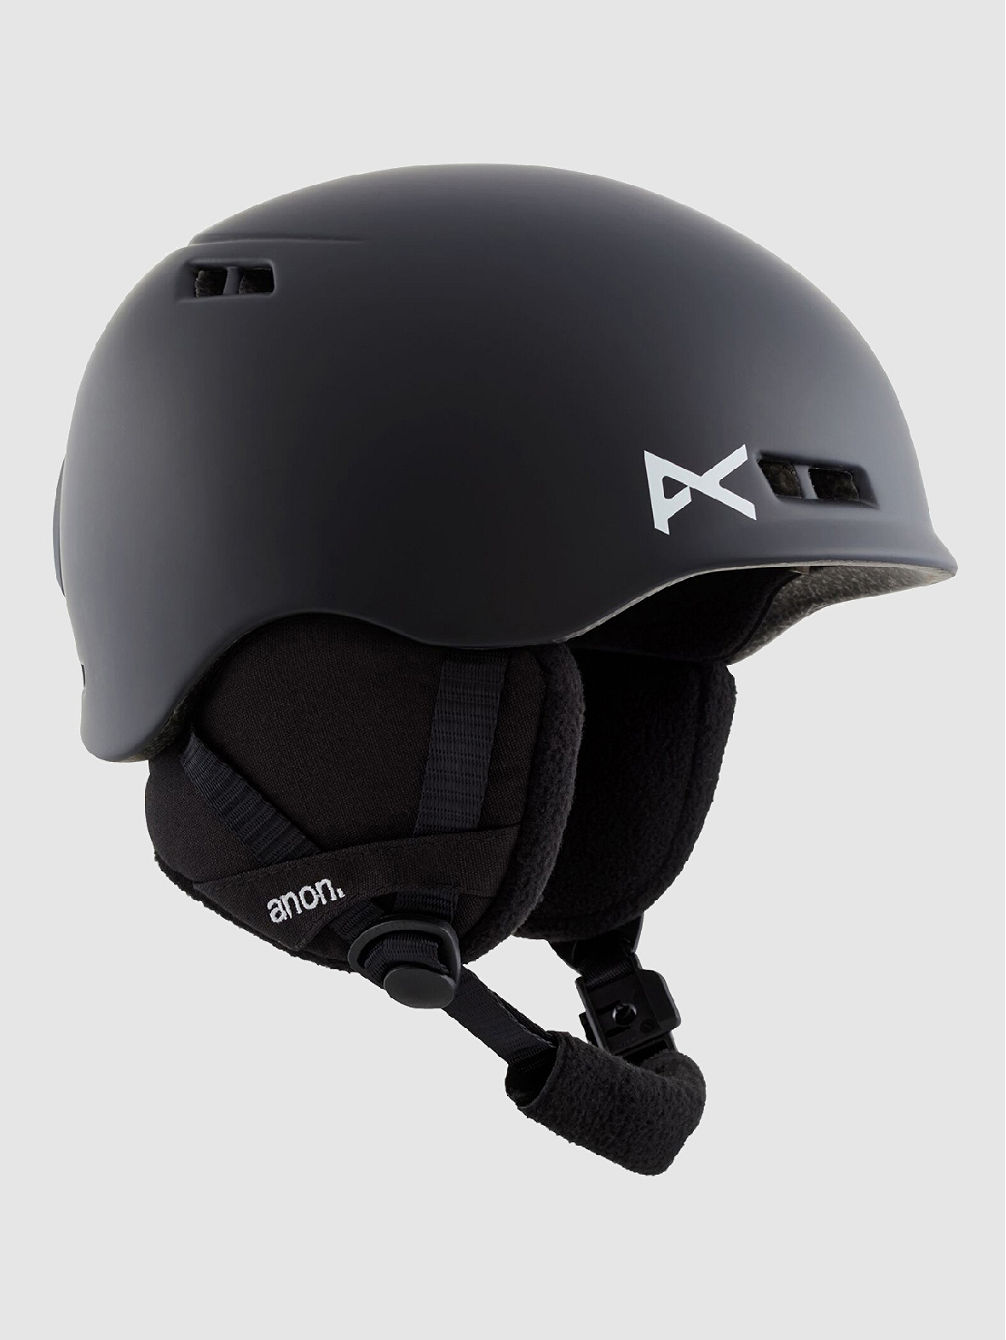 Burner MIPS Helmet